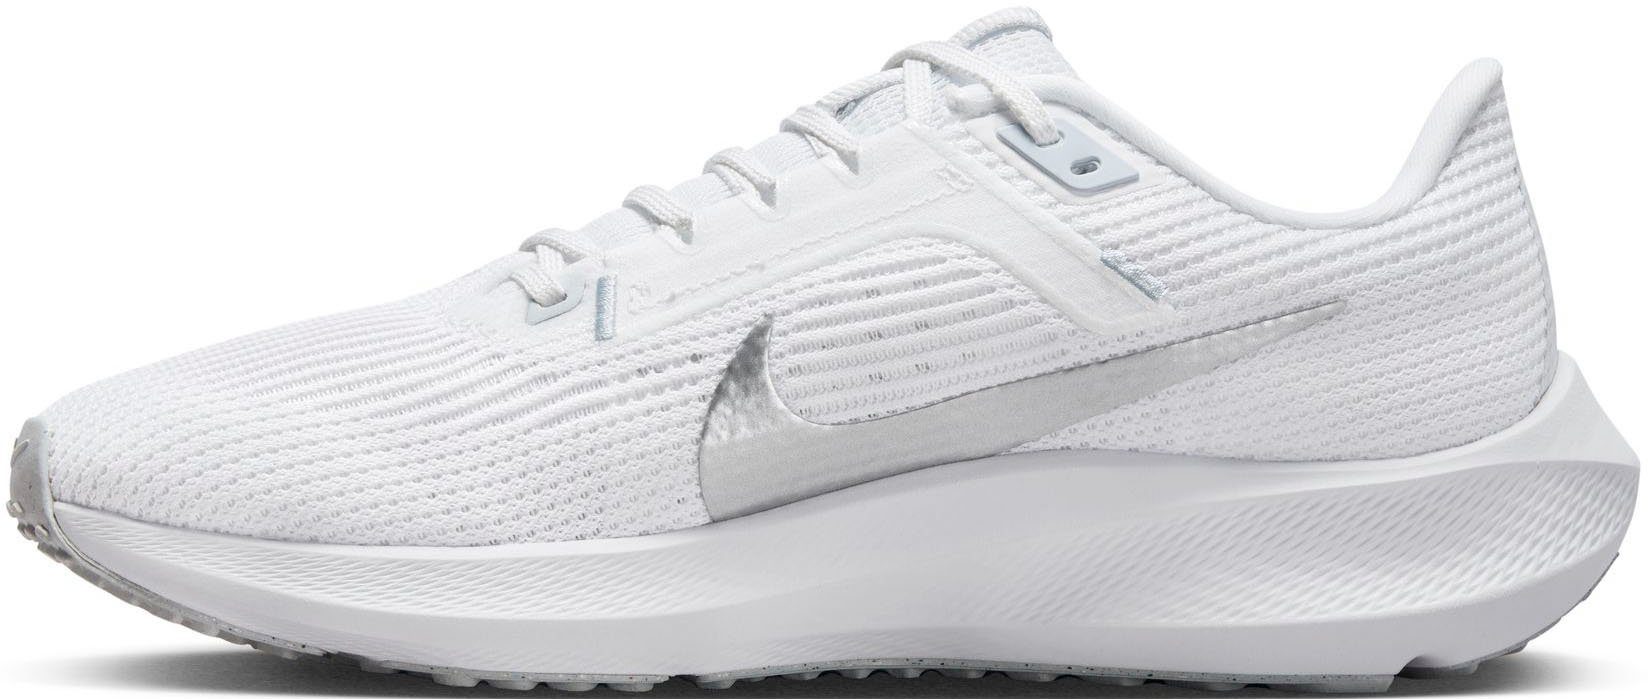 AIR 40 ZOOM PEGASUS weiß-silber Nike Laufschuh